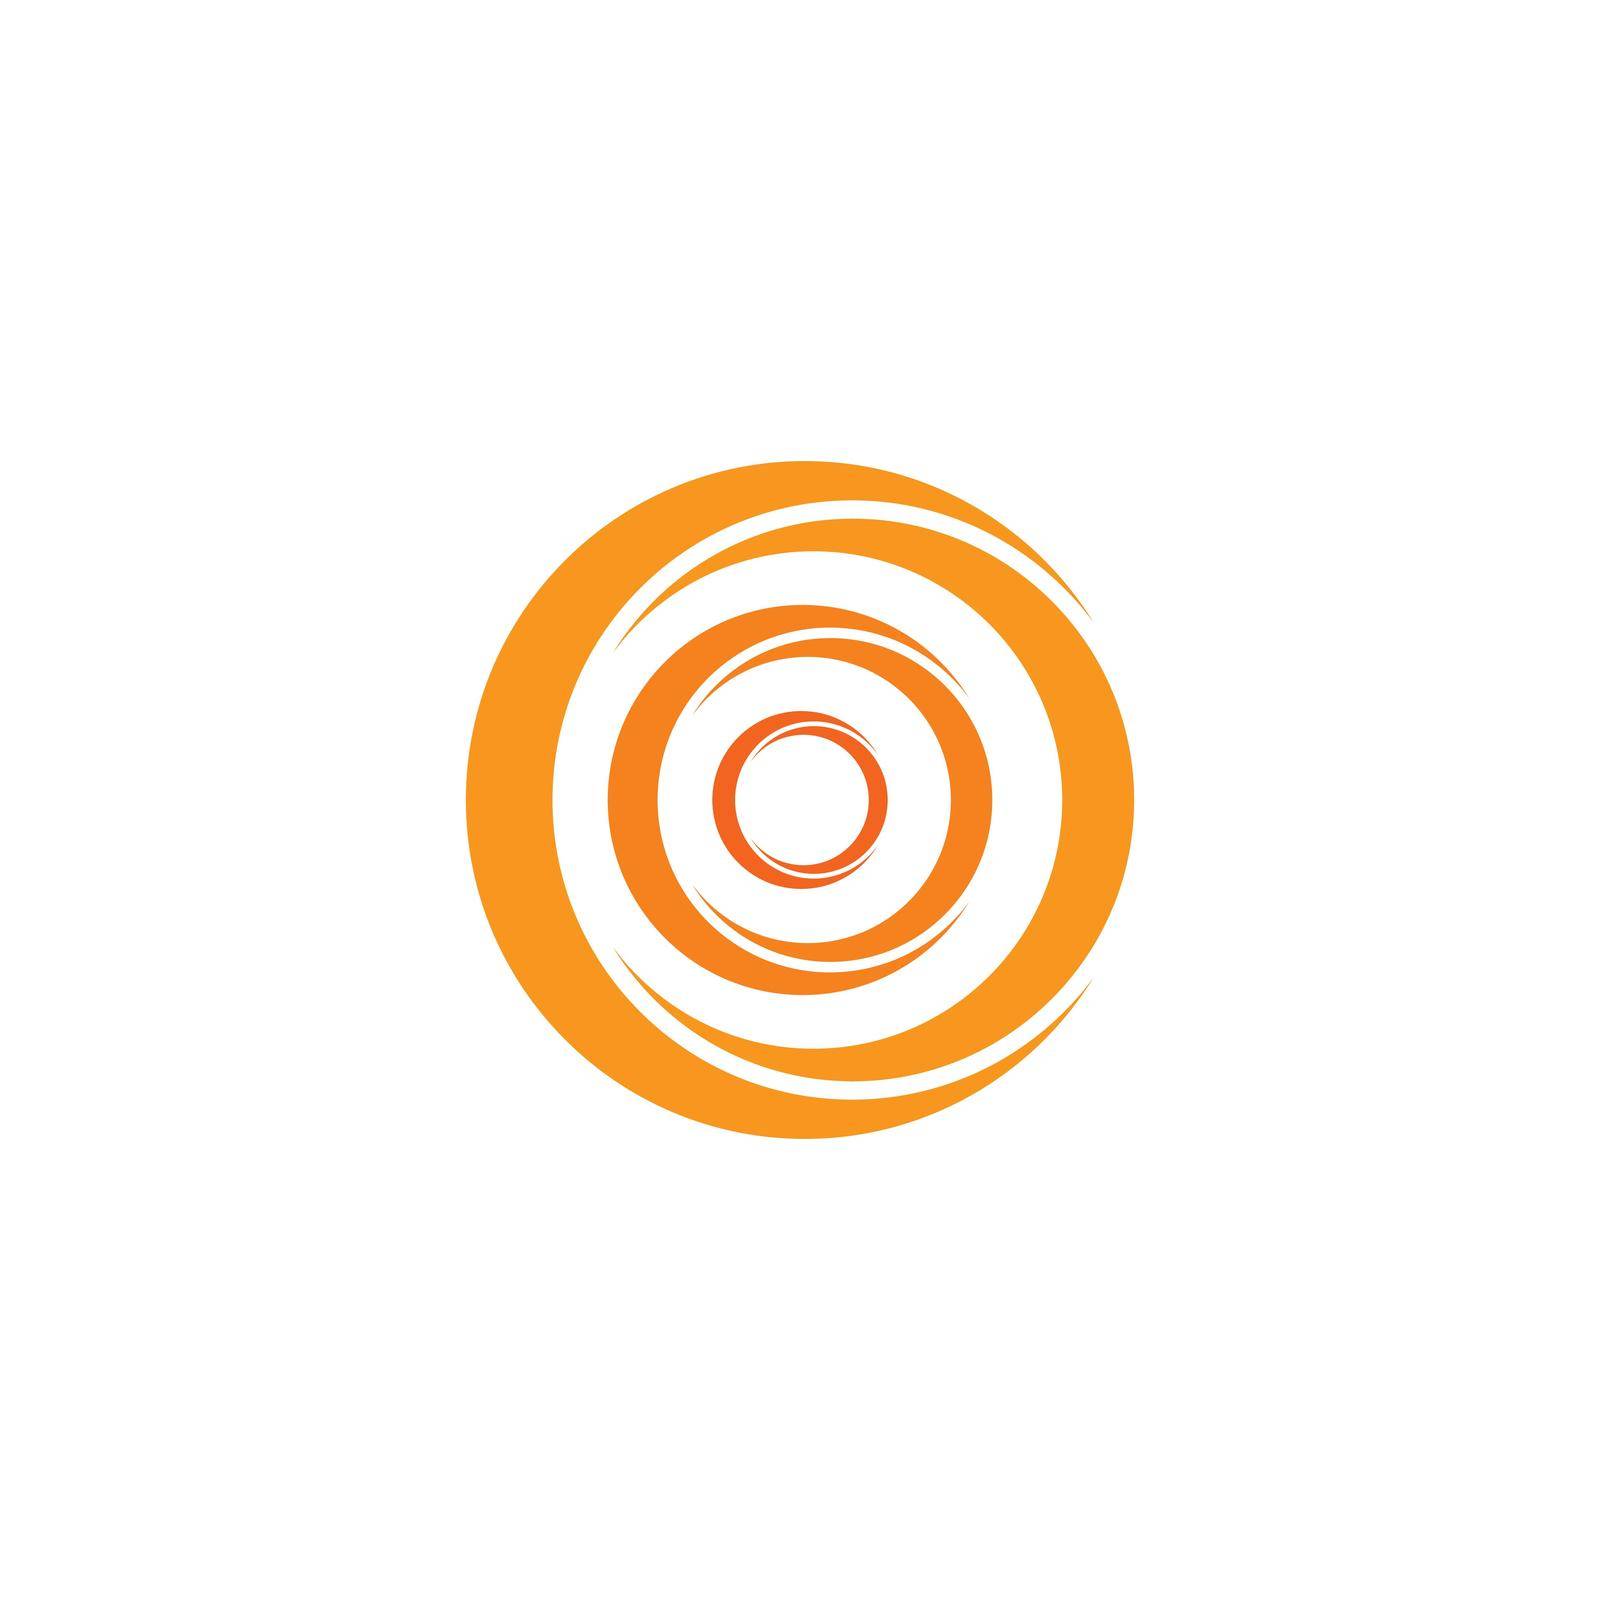 abstract circle logo vector template icon illustration by kosasihindra55